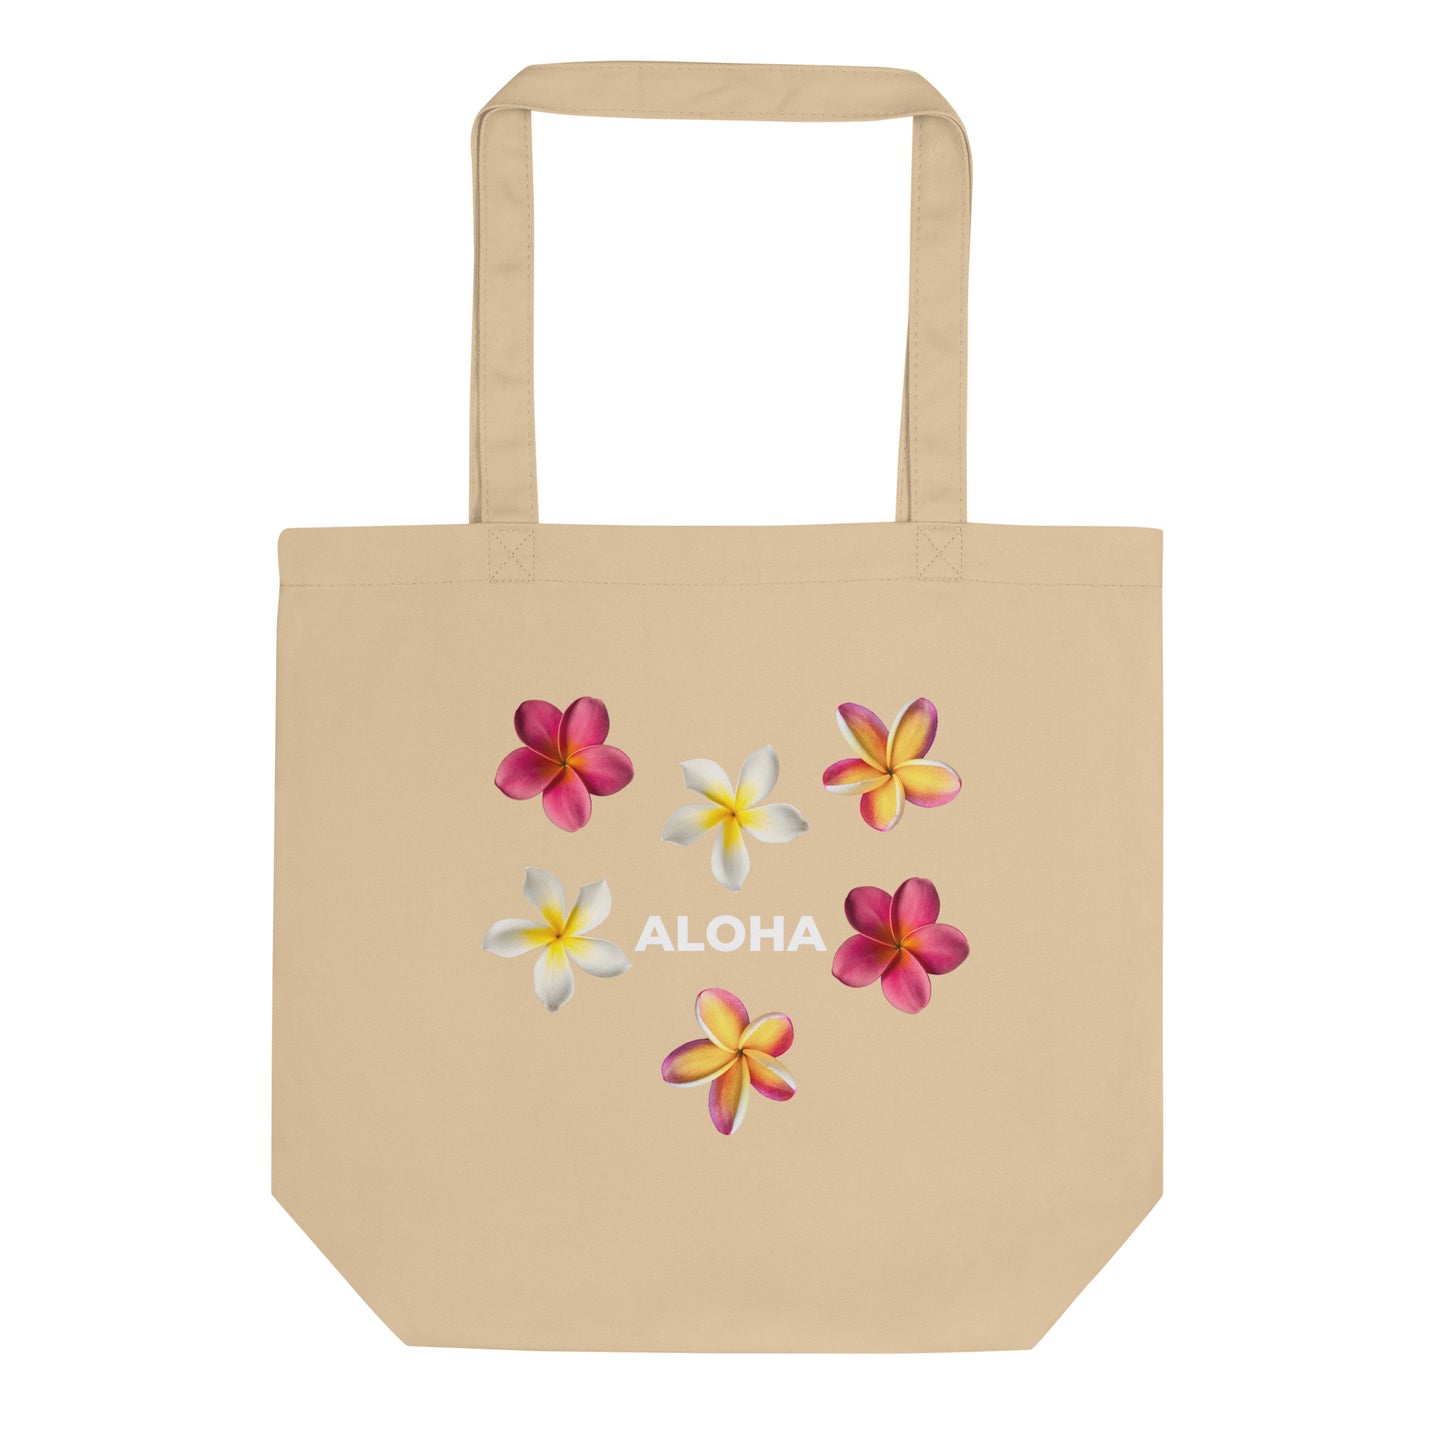 Aloha Plumeria Eco Tote Bag - White Aloha